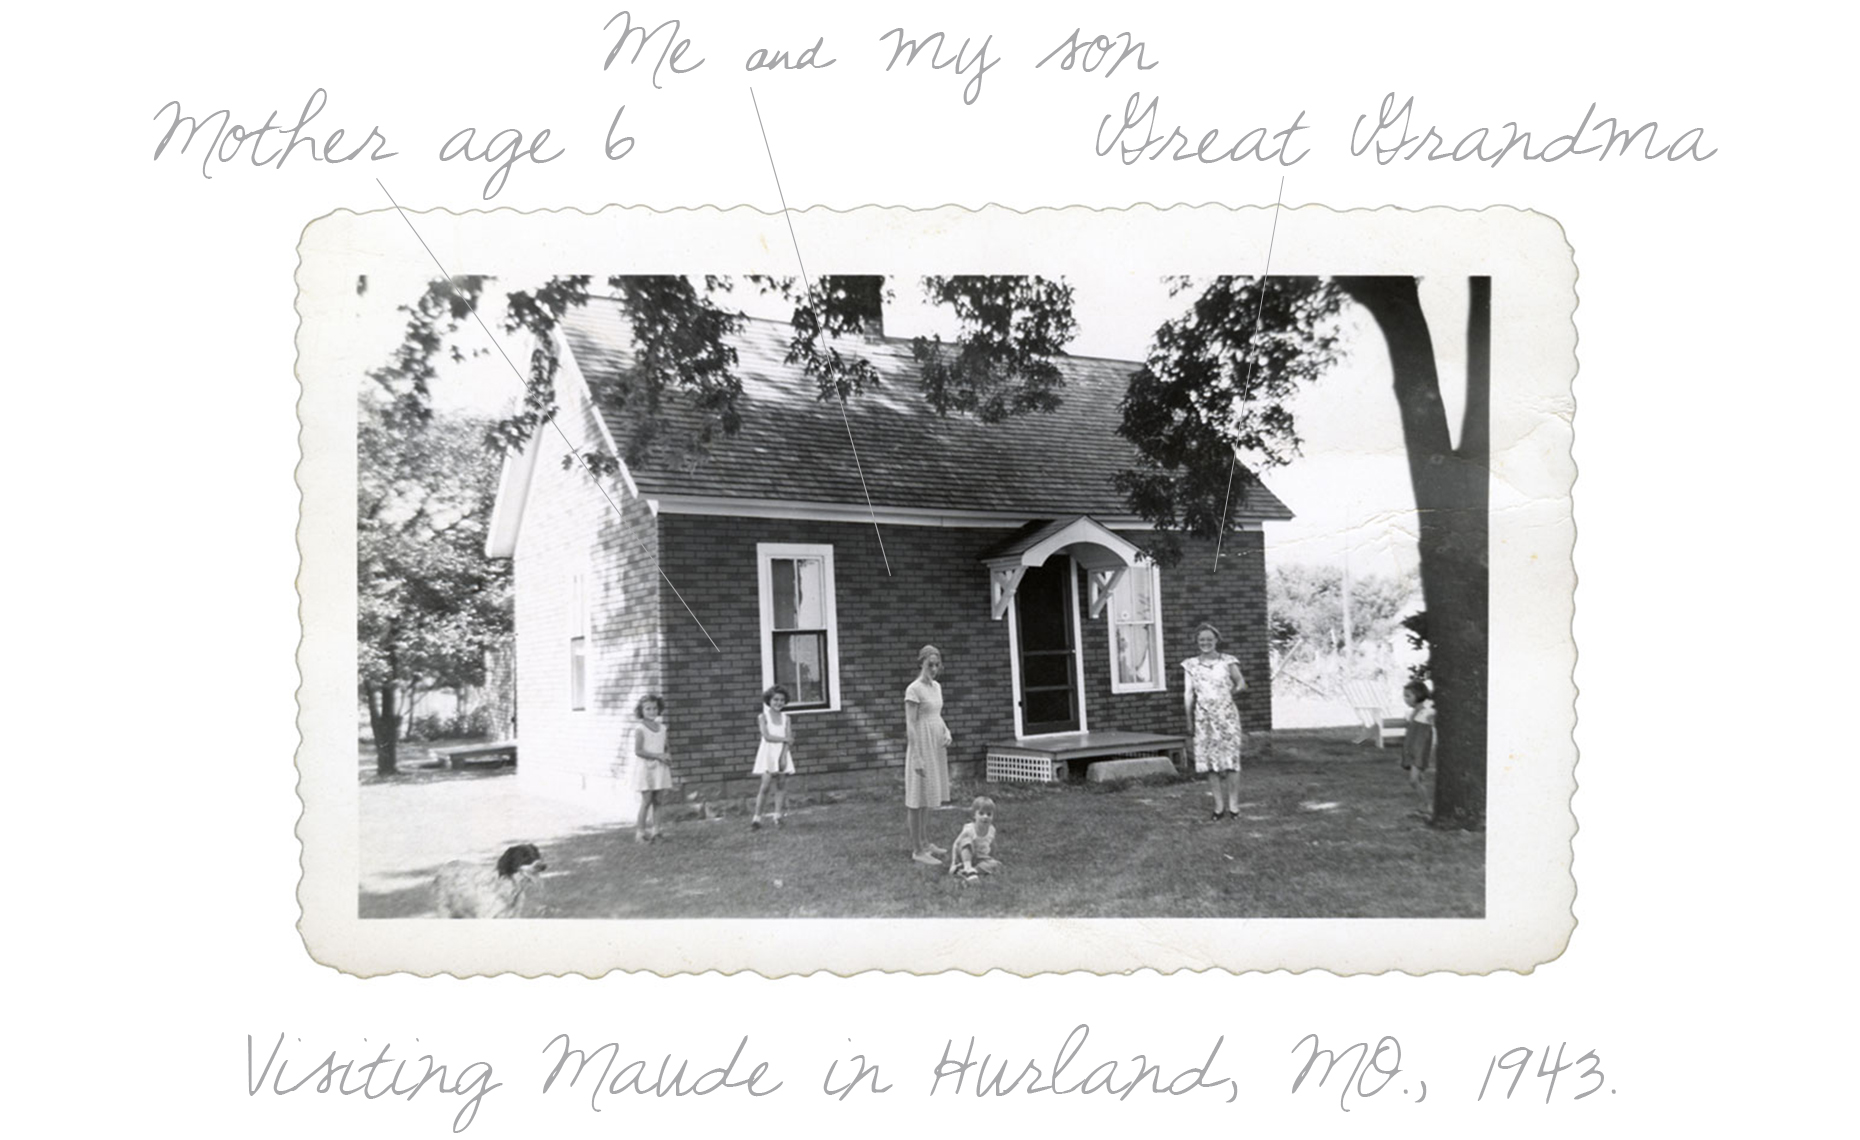  Visiting Hurdland House, 1943